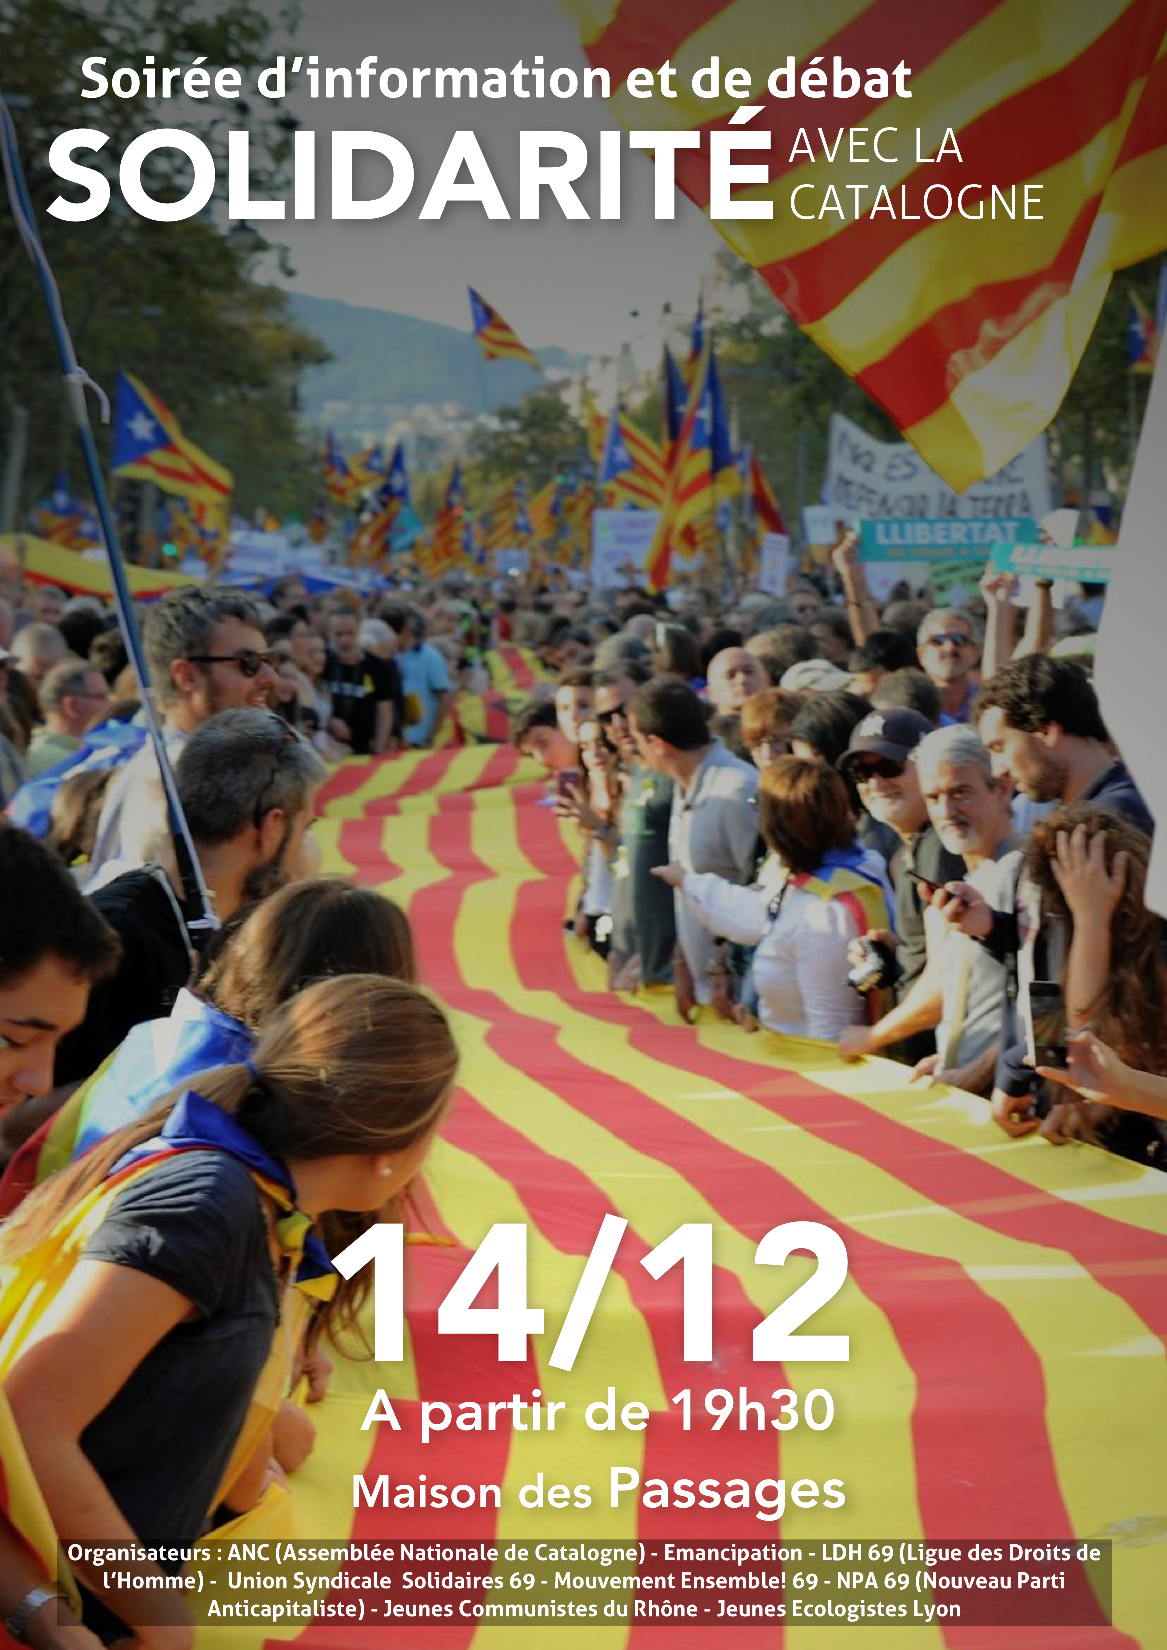 Soirée de solidarité avec la Catalogne à Lyon le 14 décembre